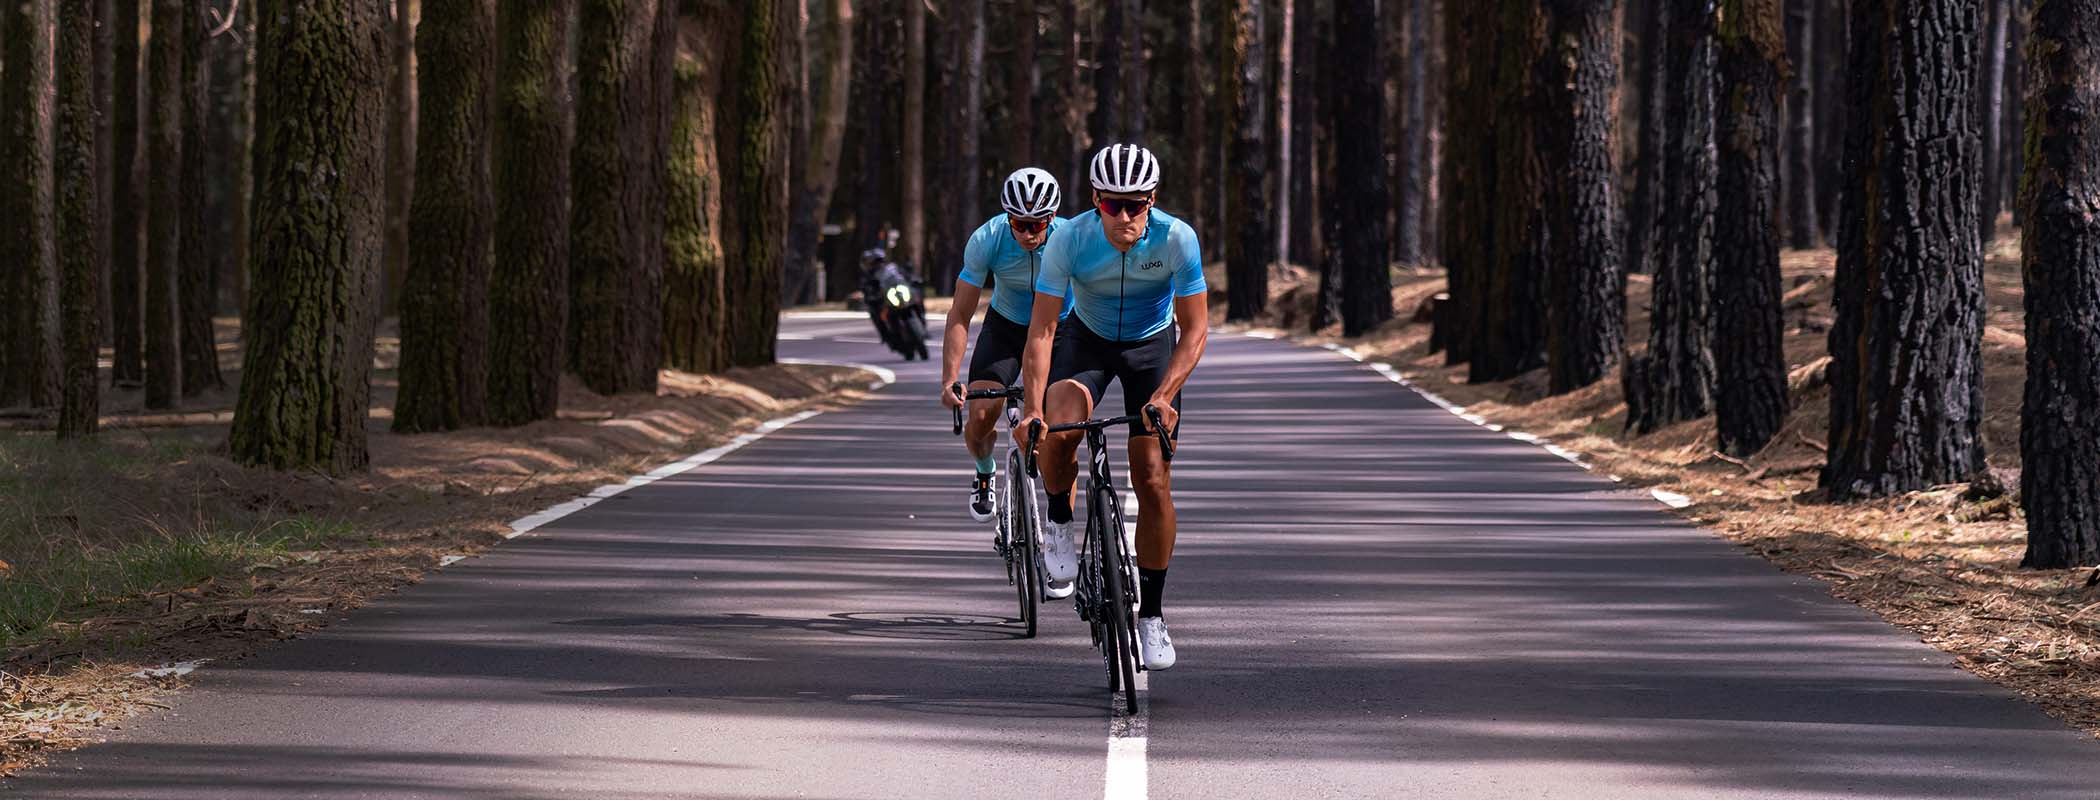 Szybko jadący kolarze po drodze na Teneryfie w błękitnych koszulkach rowerowych Luxa